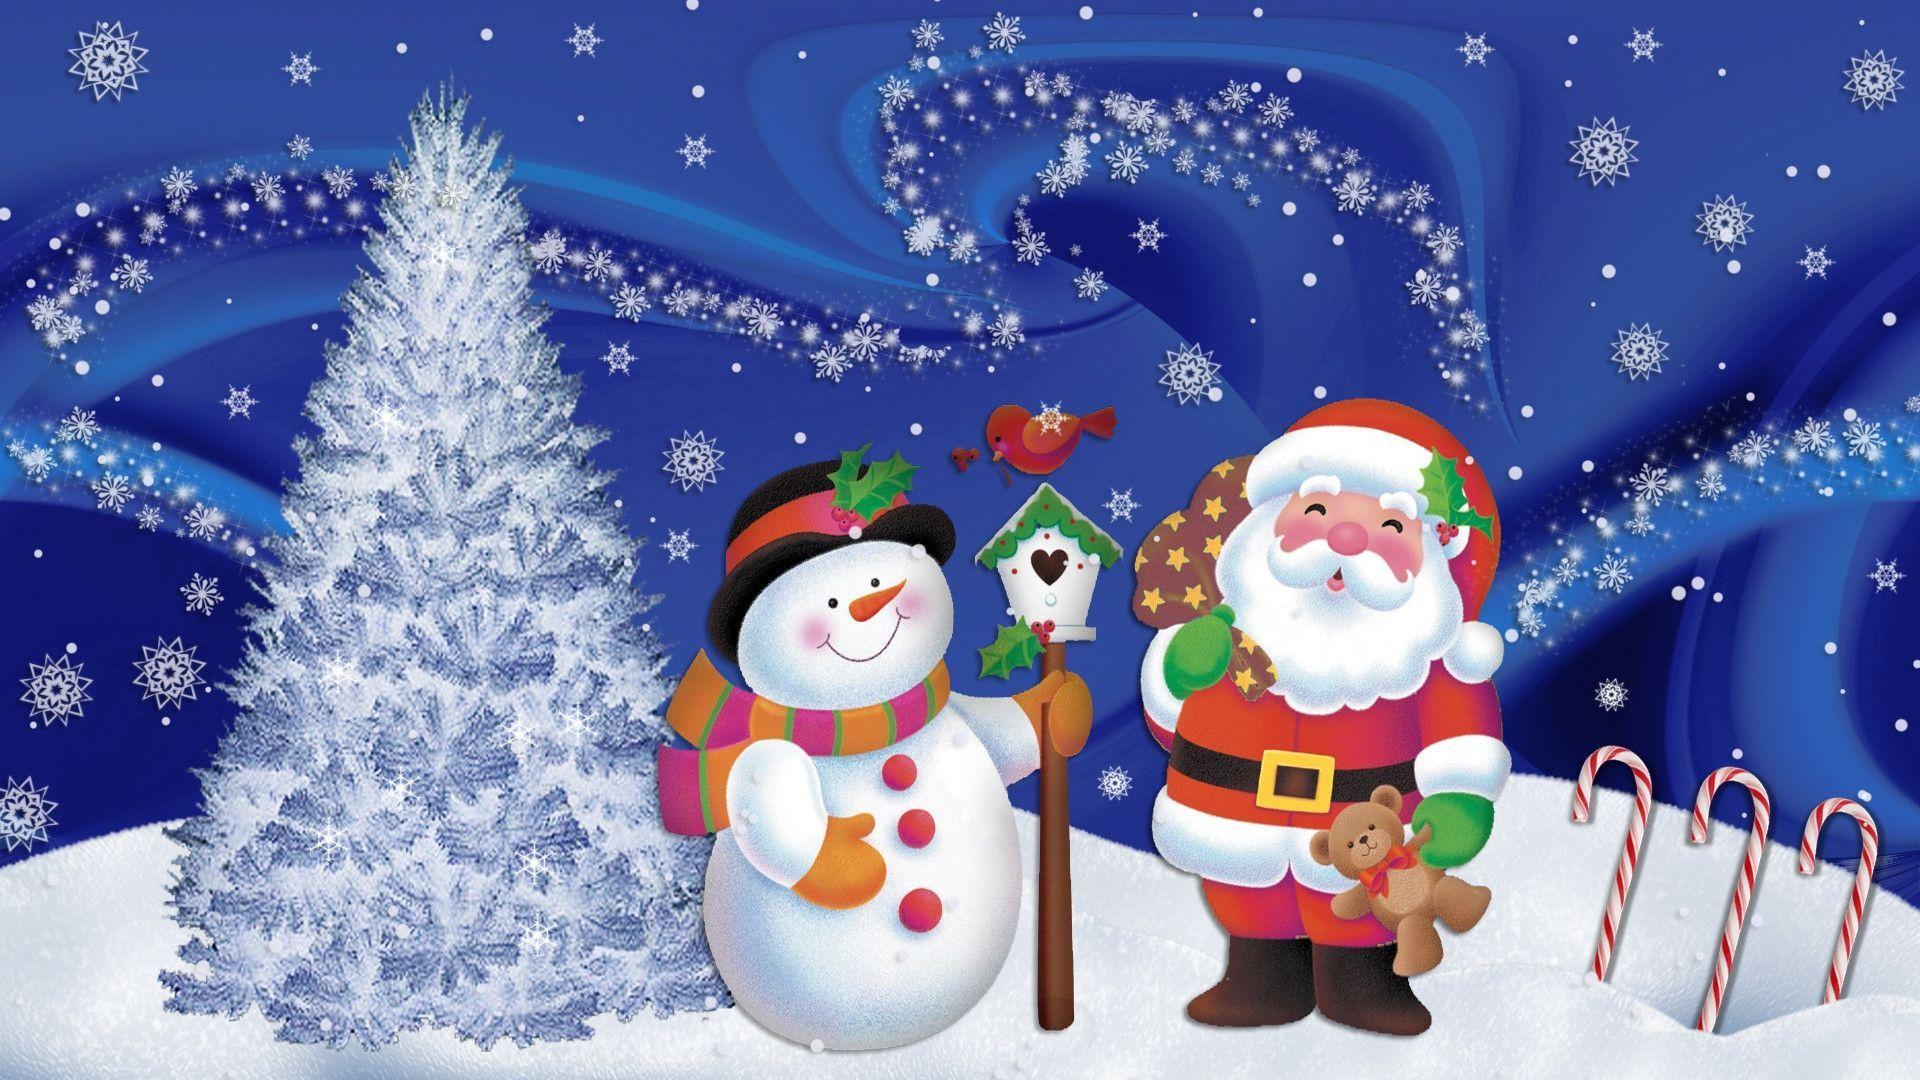 Animated Christmas Desktop wallpaper. Animated Christmas